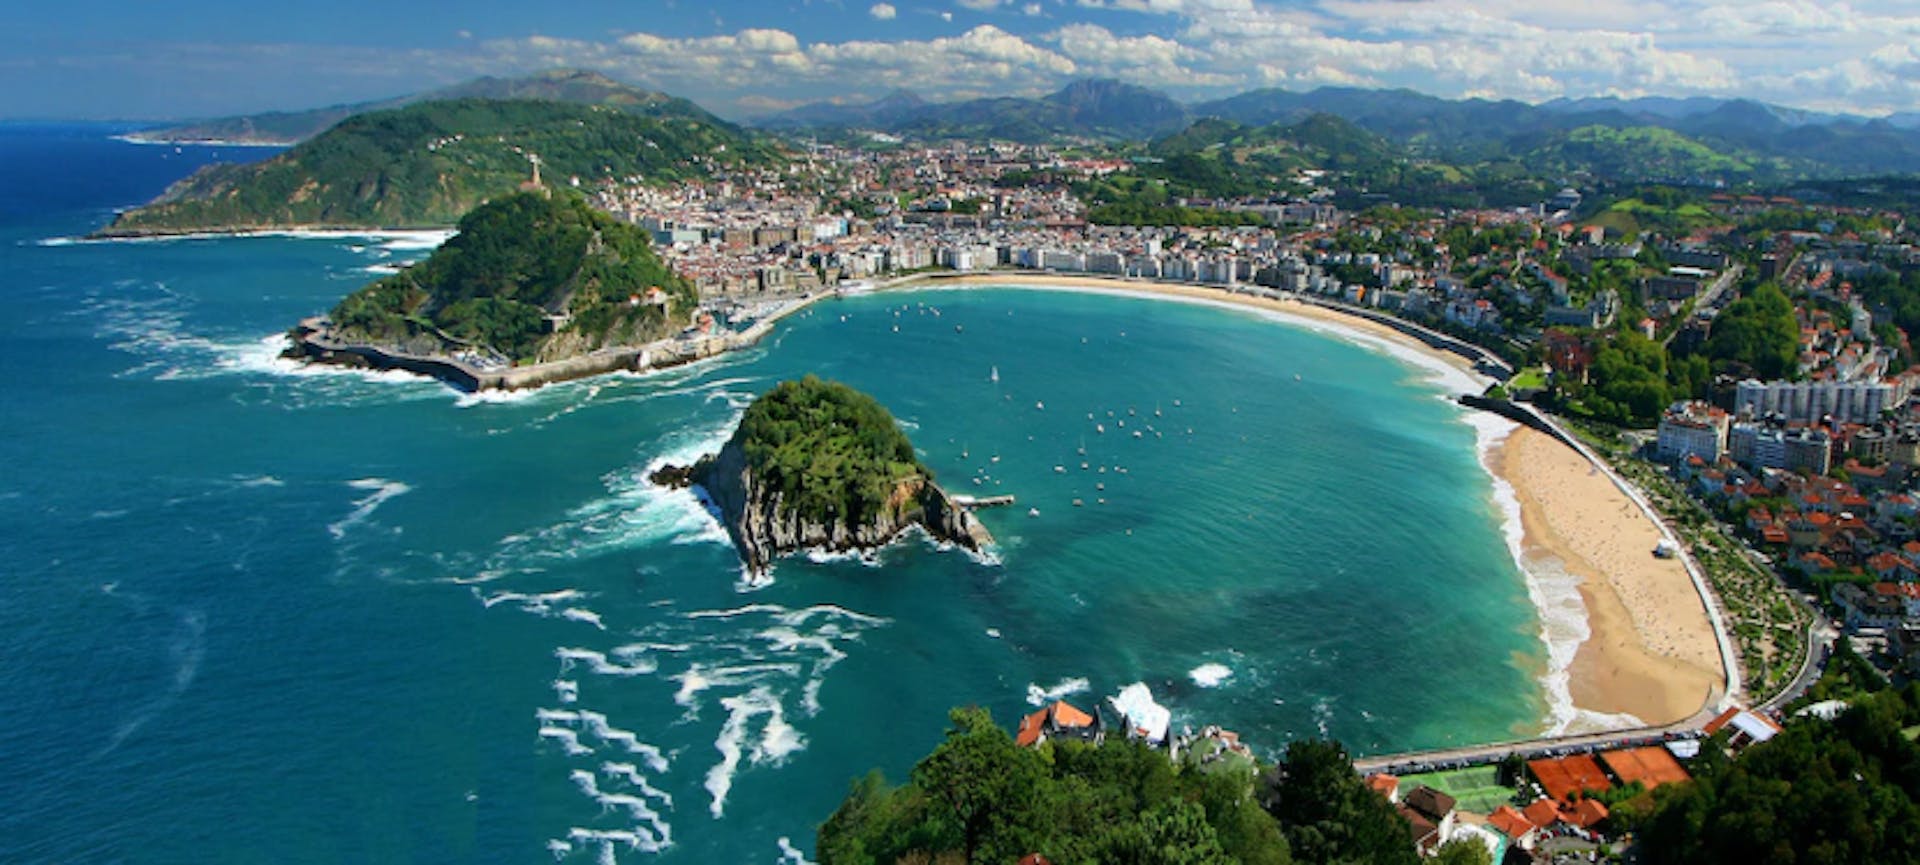 San Sebastian, Pays Basque et plages de rêve !